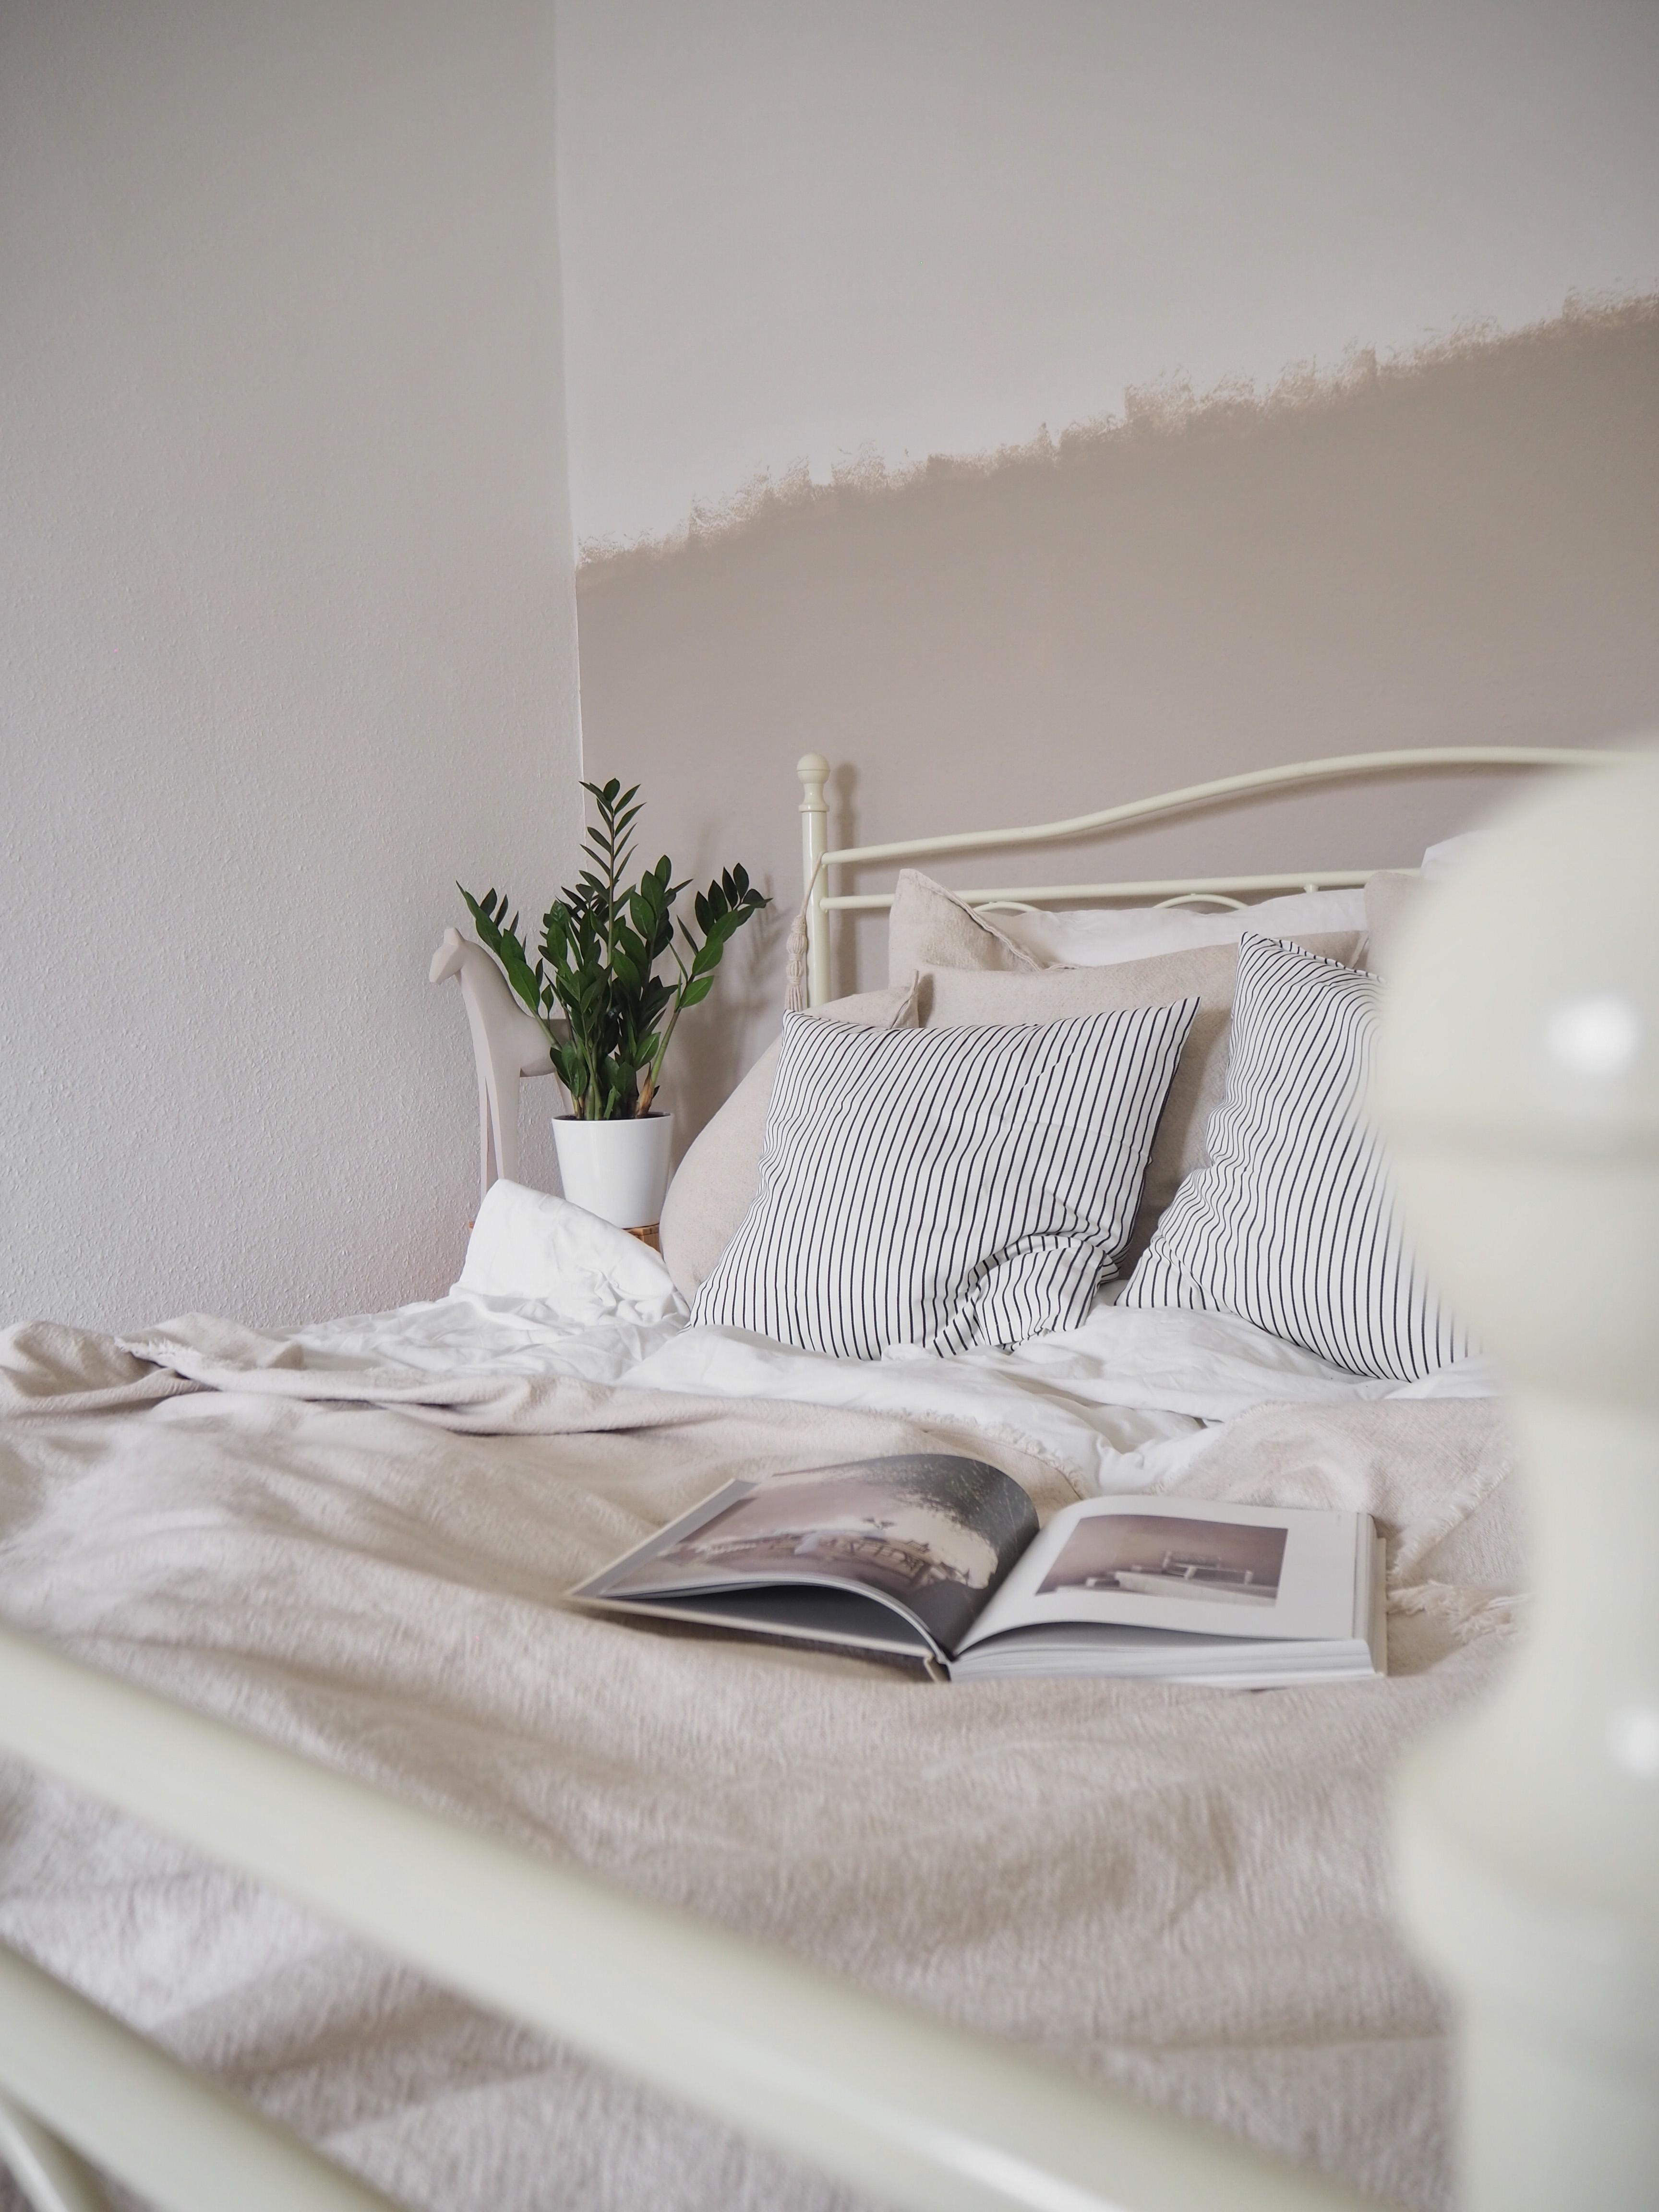 Glücksfedern sind die idealen Schlafzimmerpflanzen 🌱#schlafzimmer #altbau #hygge #nordic #leinen #beige #wandfarbe